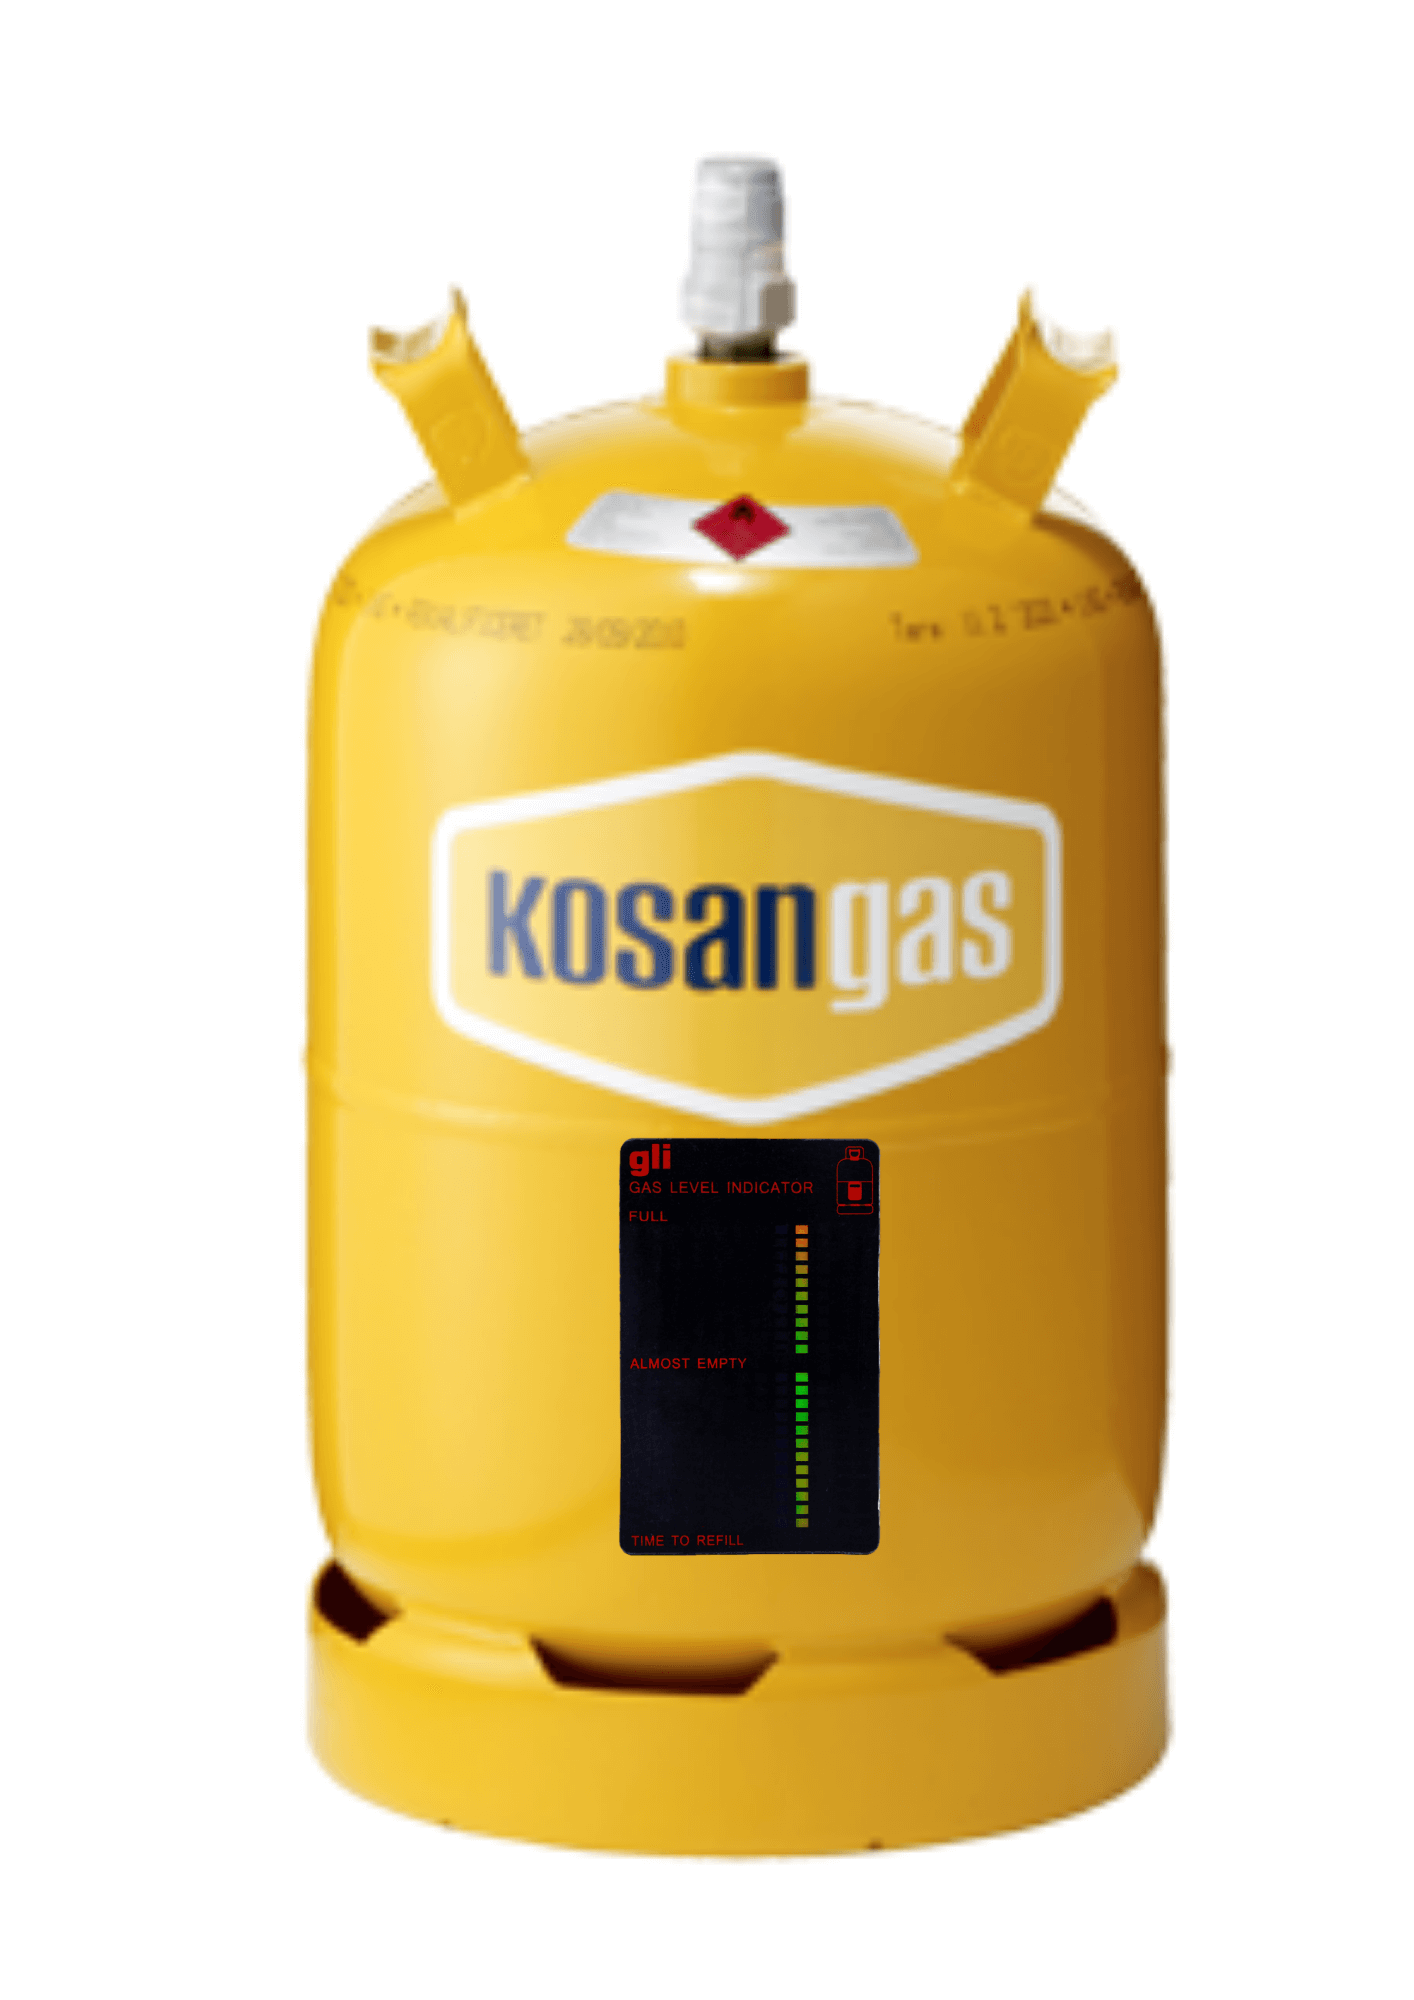 anklageren celle Glæd dig → Gas Niveau Indikator til Alle Gasflasker - God & Billig | Fri Fragt